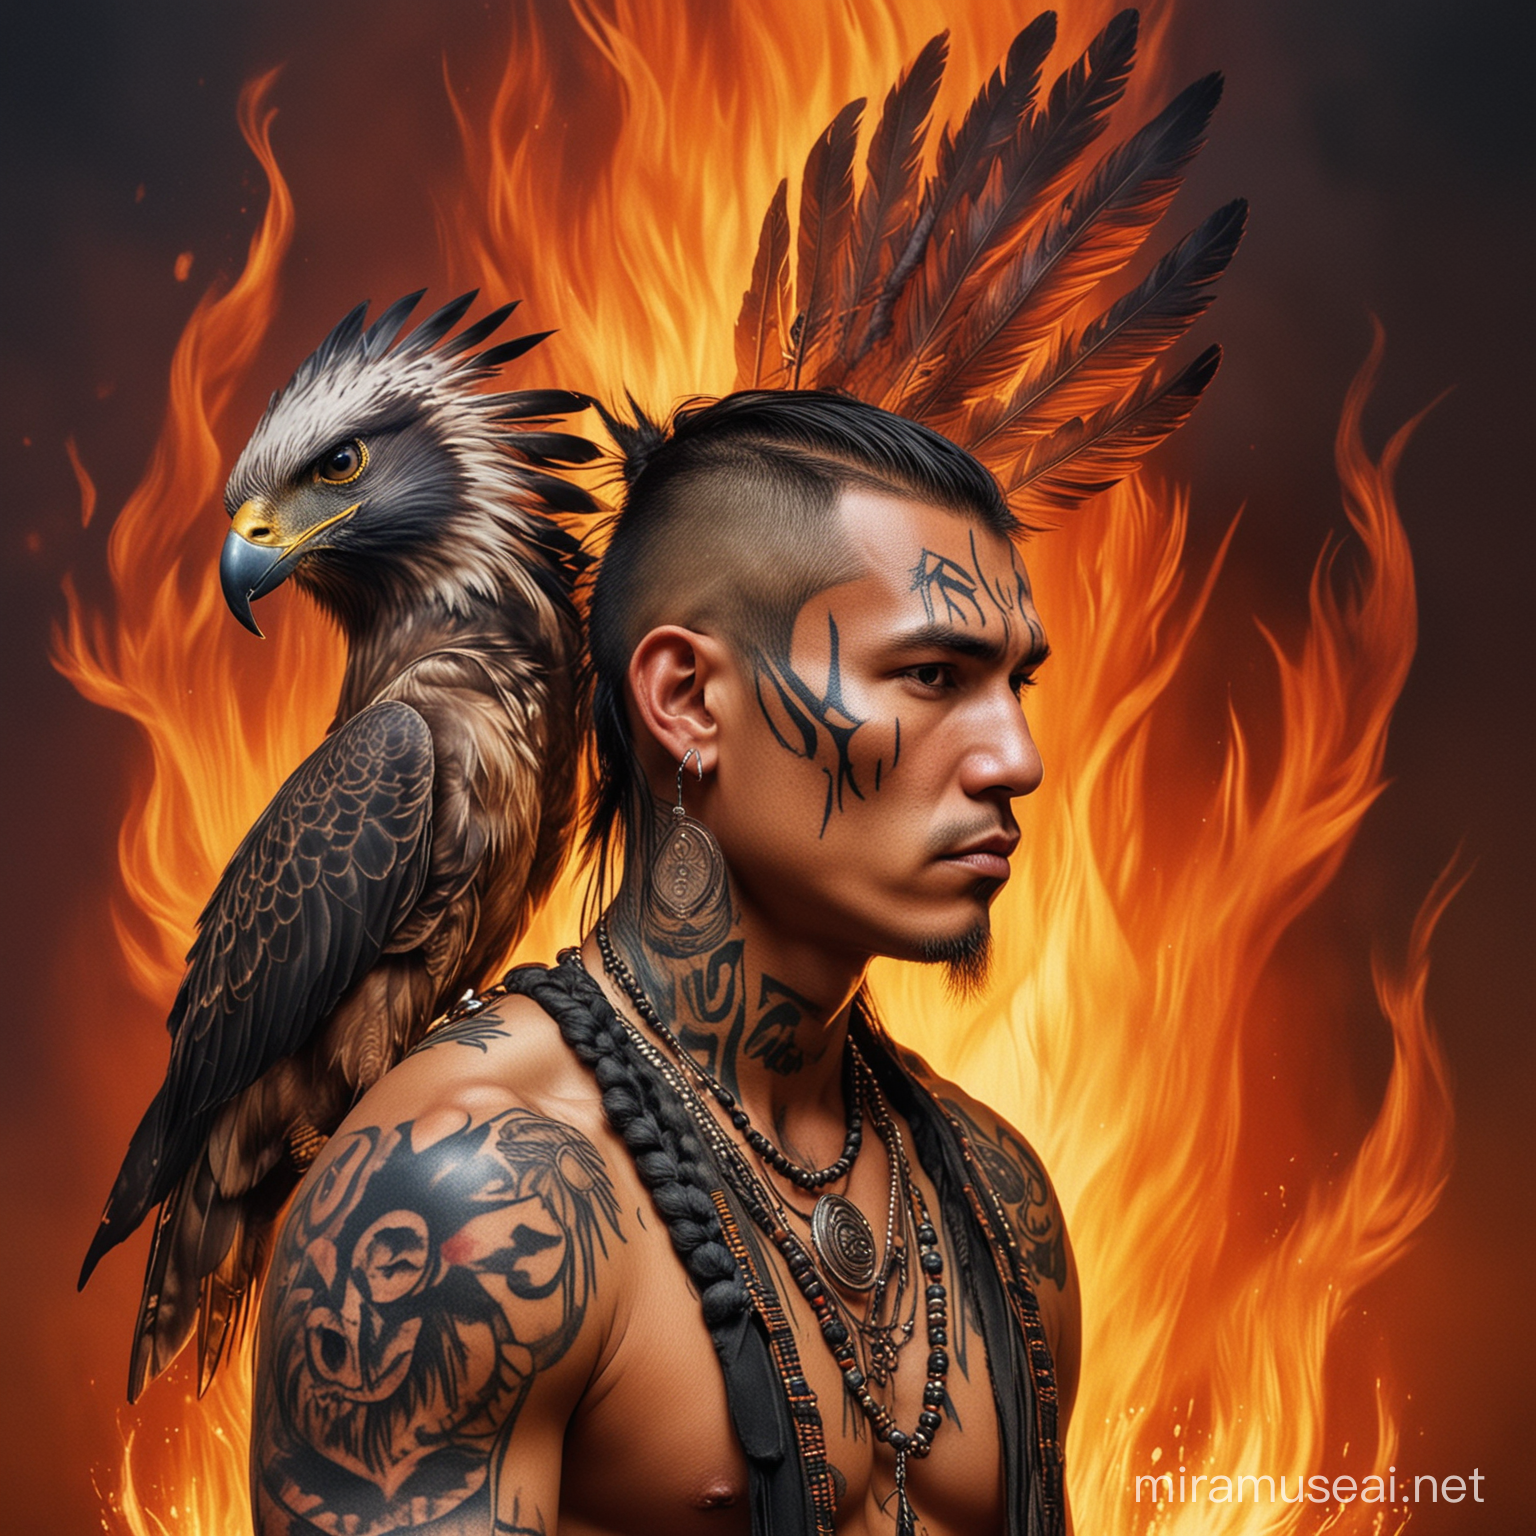 Un ondiano americano con i capelli tagliati alla moicana.
Un falco tatuato in faccia.
Sullo sfondo delle fiamme
